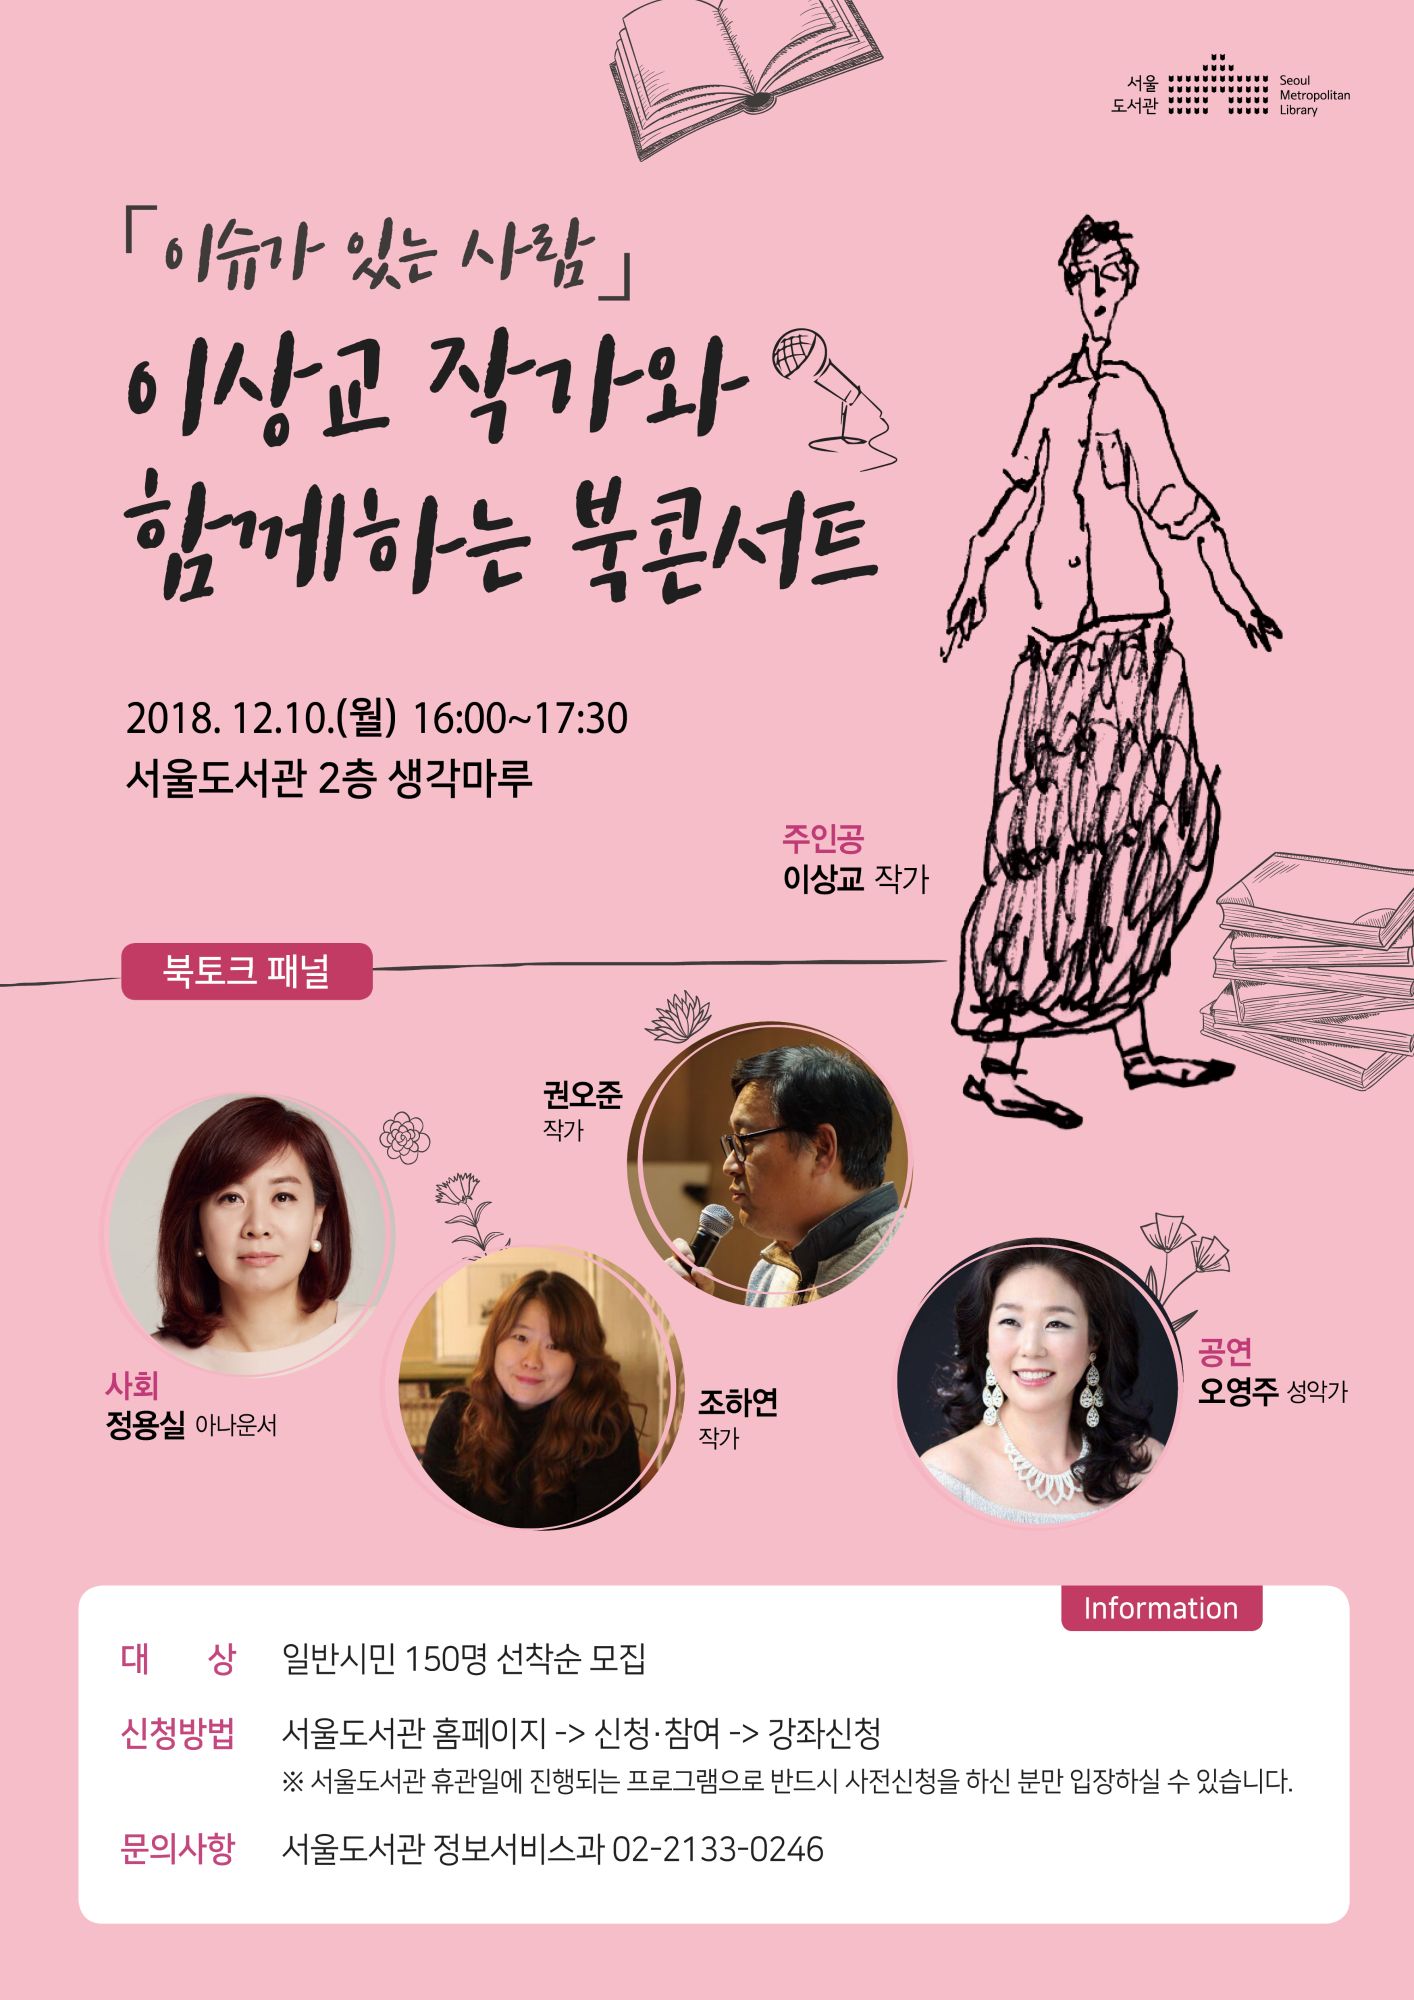 [북콘서트] 이슈가 있는 사람 - 이상교 작가와 함께하는 북콘서트 포스터